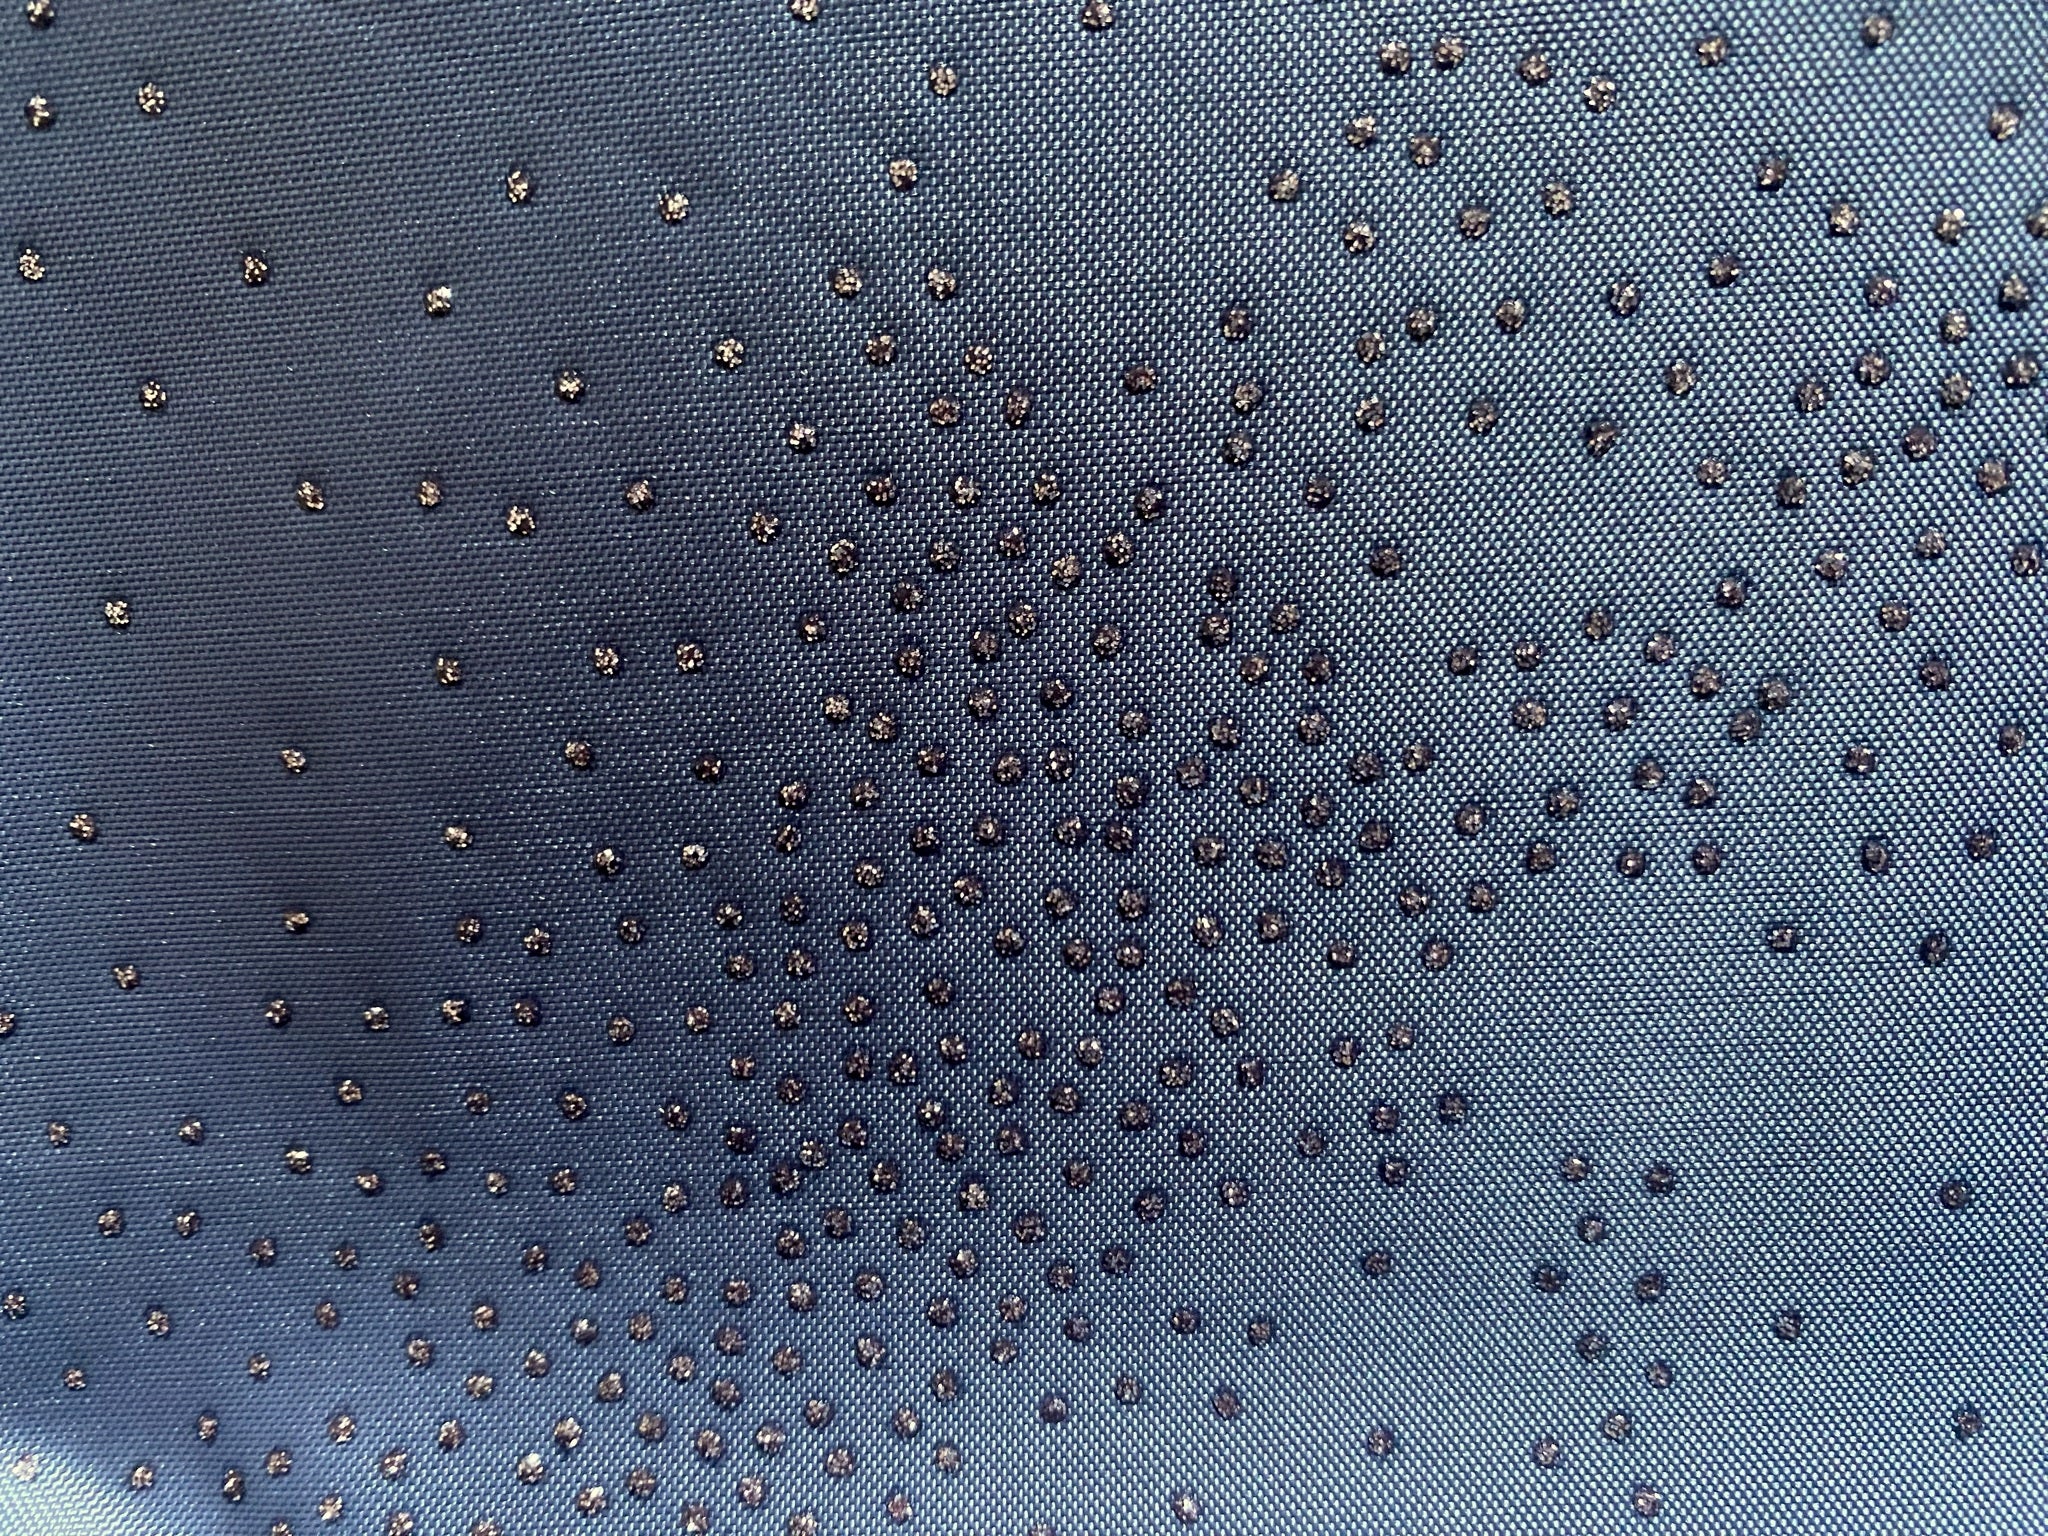 Textil-Duschvorhang Strass grau silber BxH 180x200cm